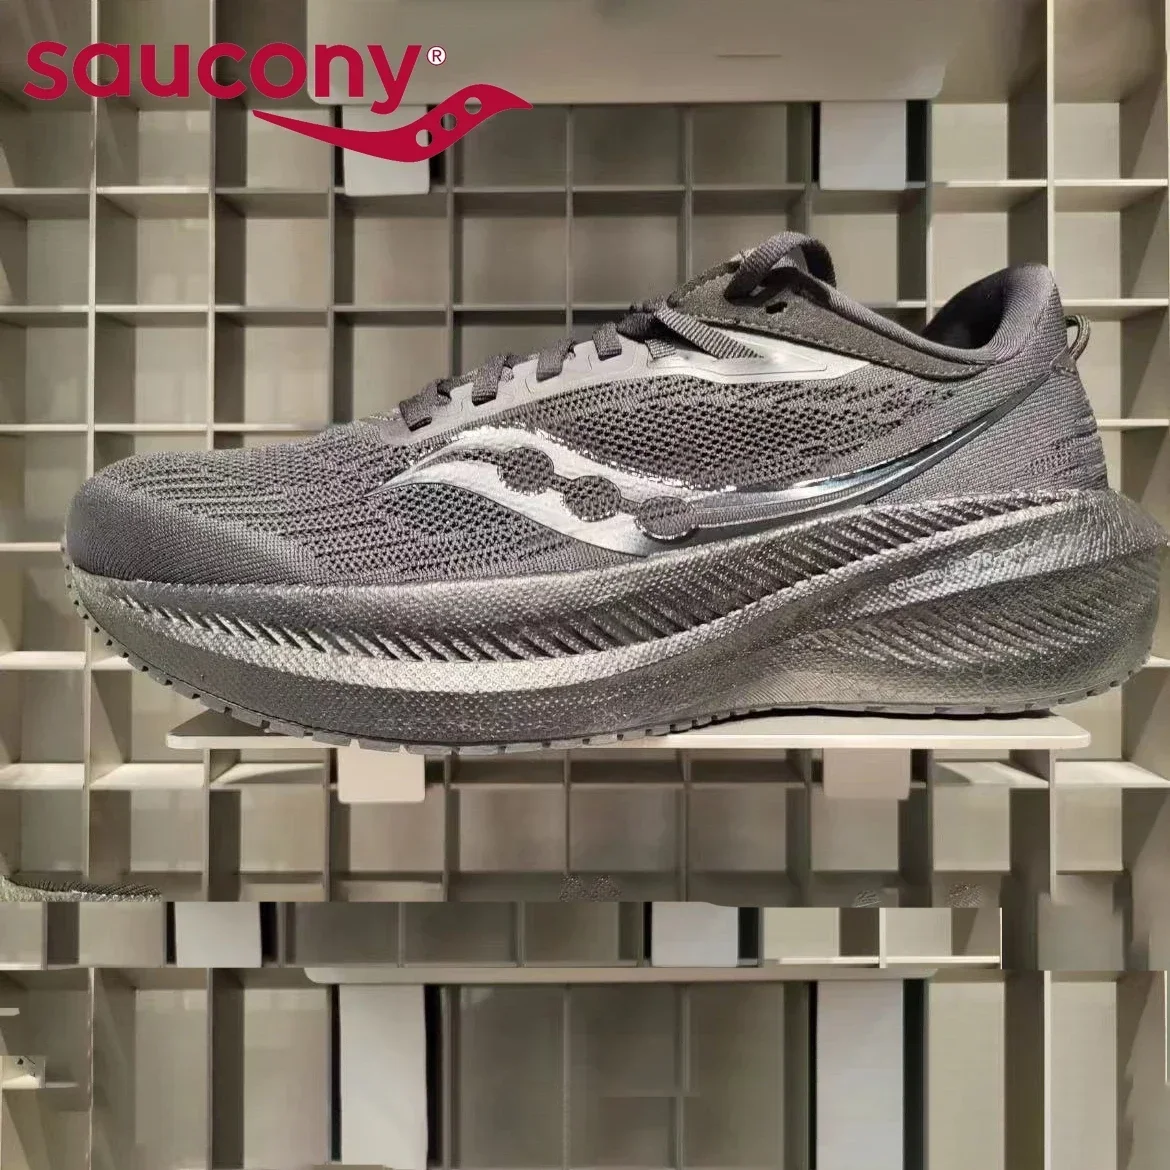 

Saucony оригинальные новые кроссовки для бега Victory 20 и 21, летние сетчатые кроссовки Cam Shock, мужские и женские кроссовки, мужская обувь